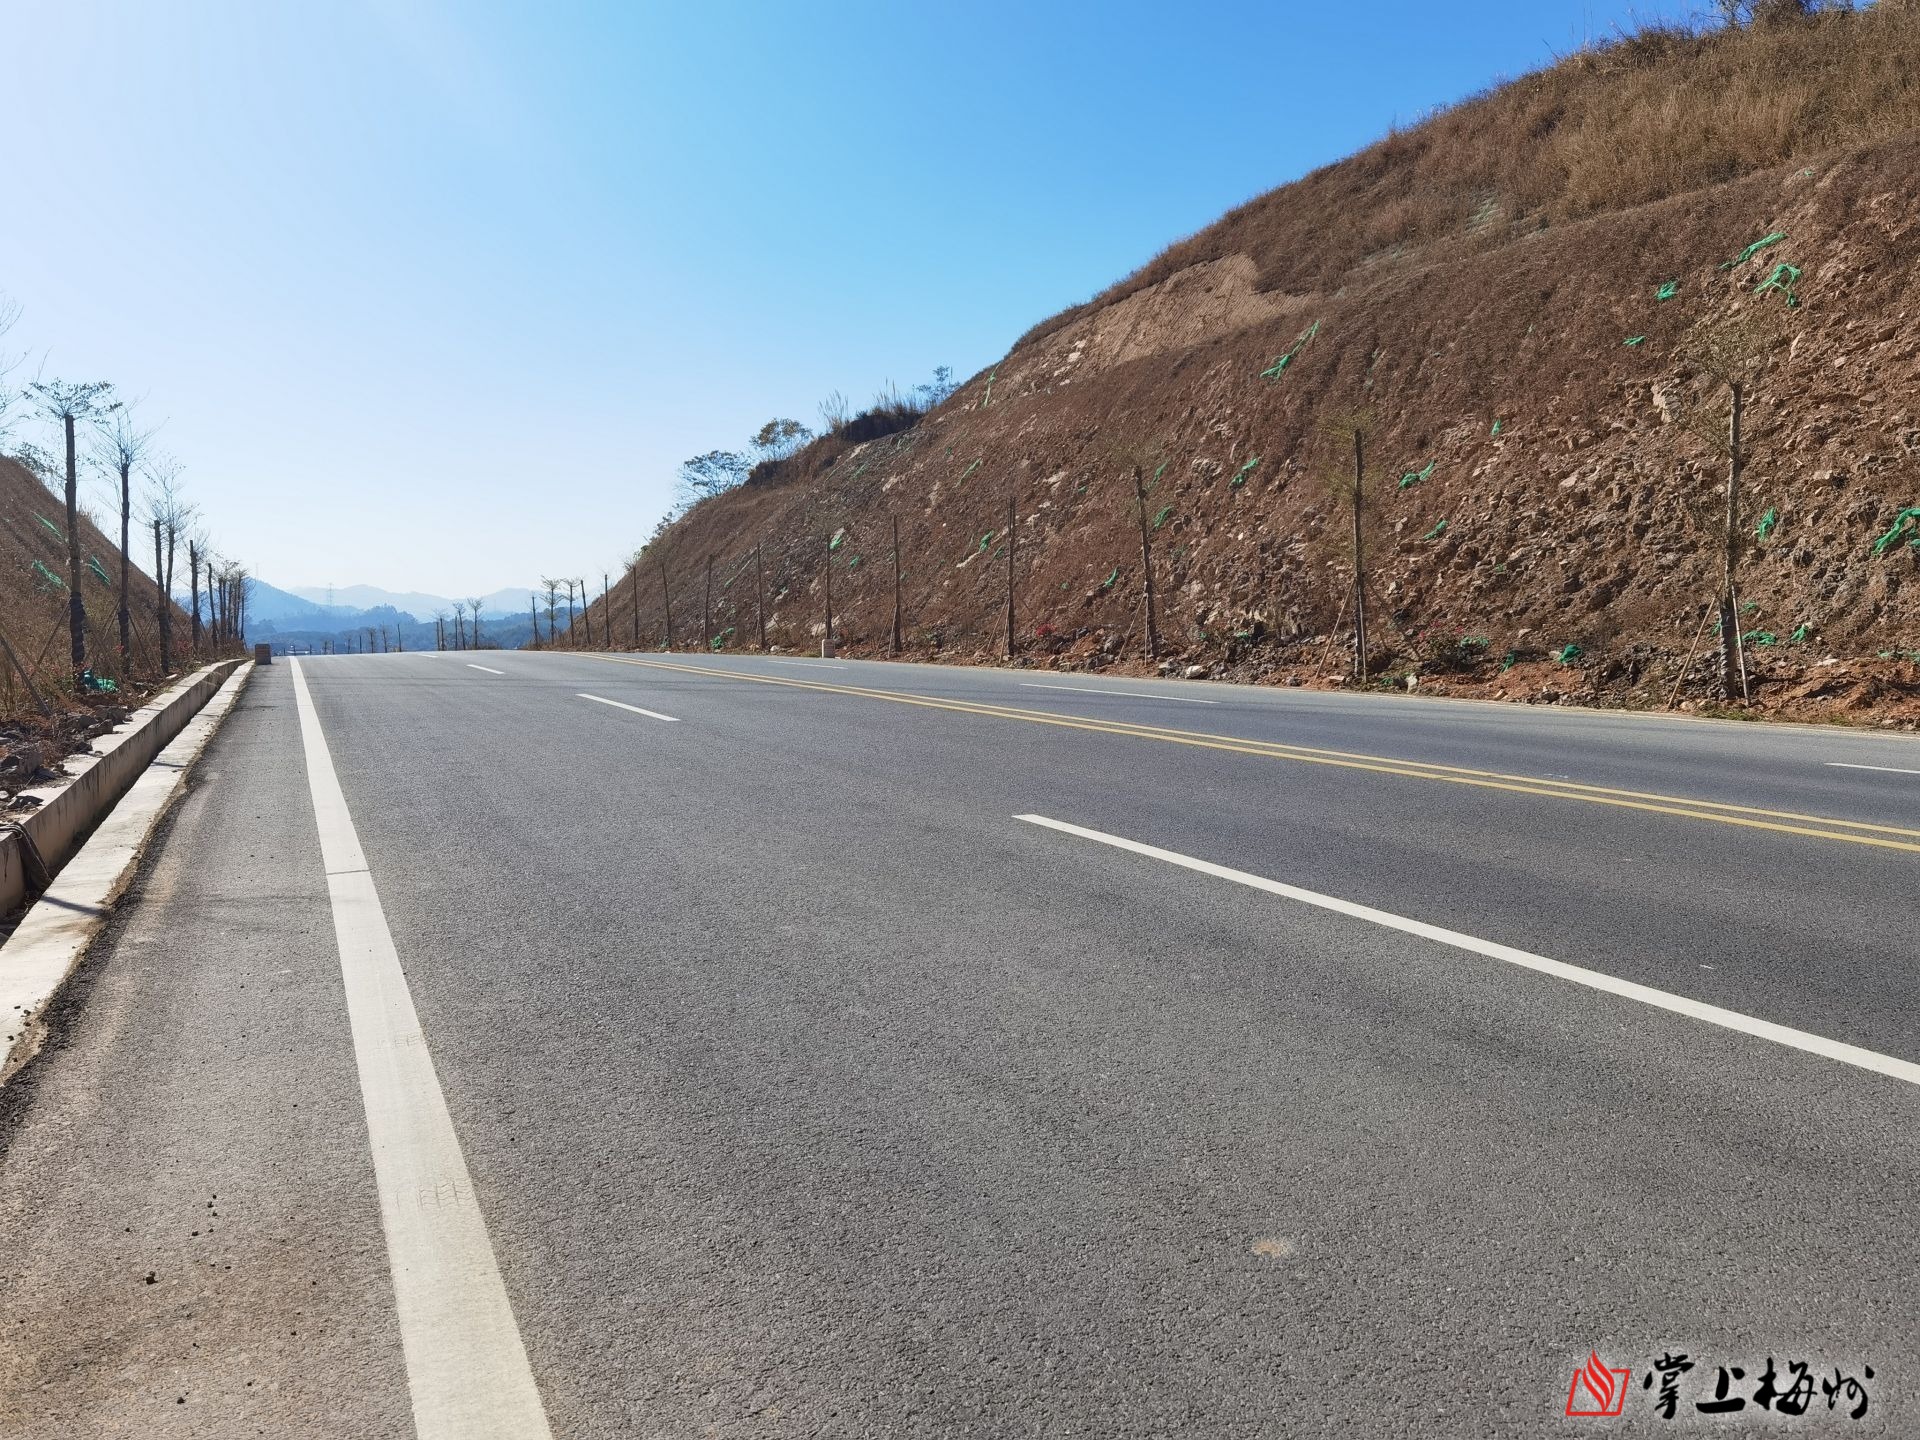 据了解,国道206线升级改造工程起于兴宁市松陂,途经兴宁洪坑径,梅县区